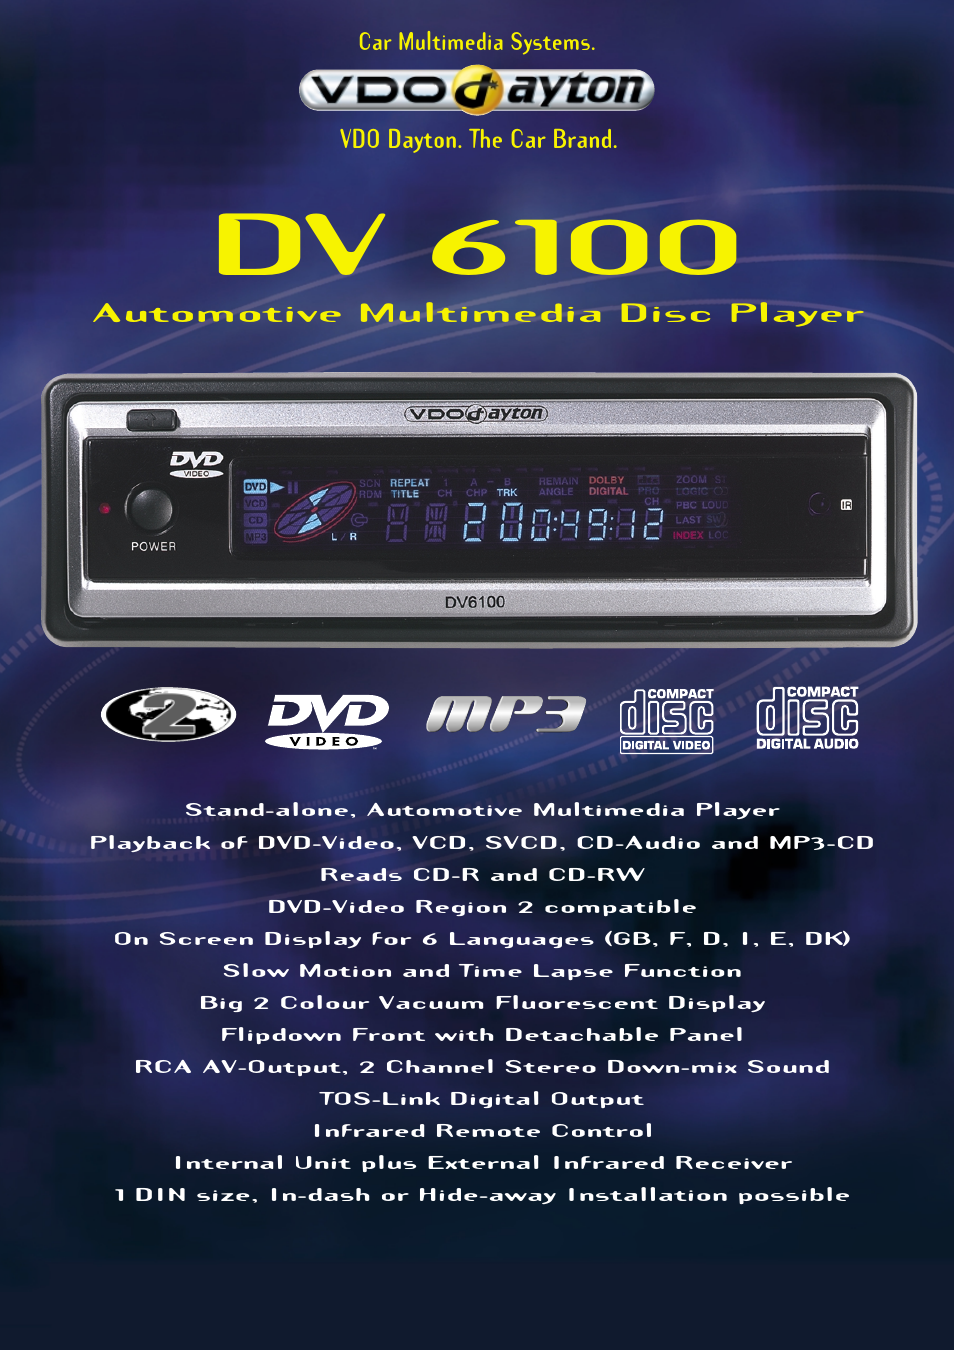 DV 6100